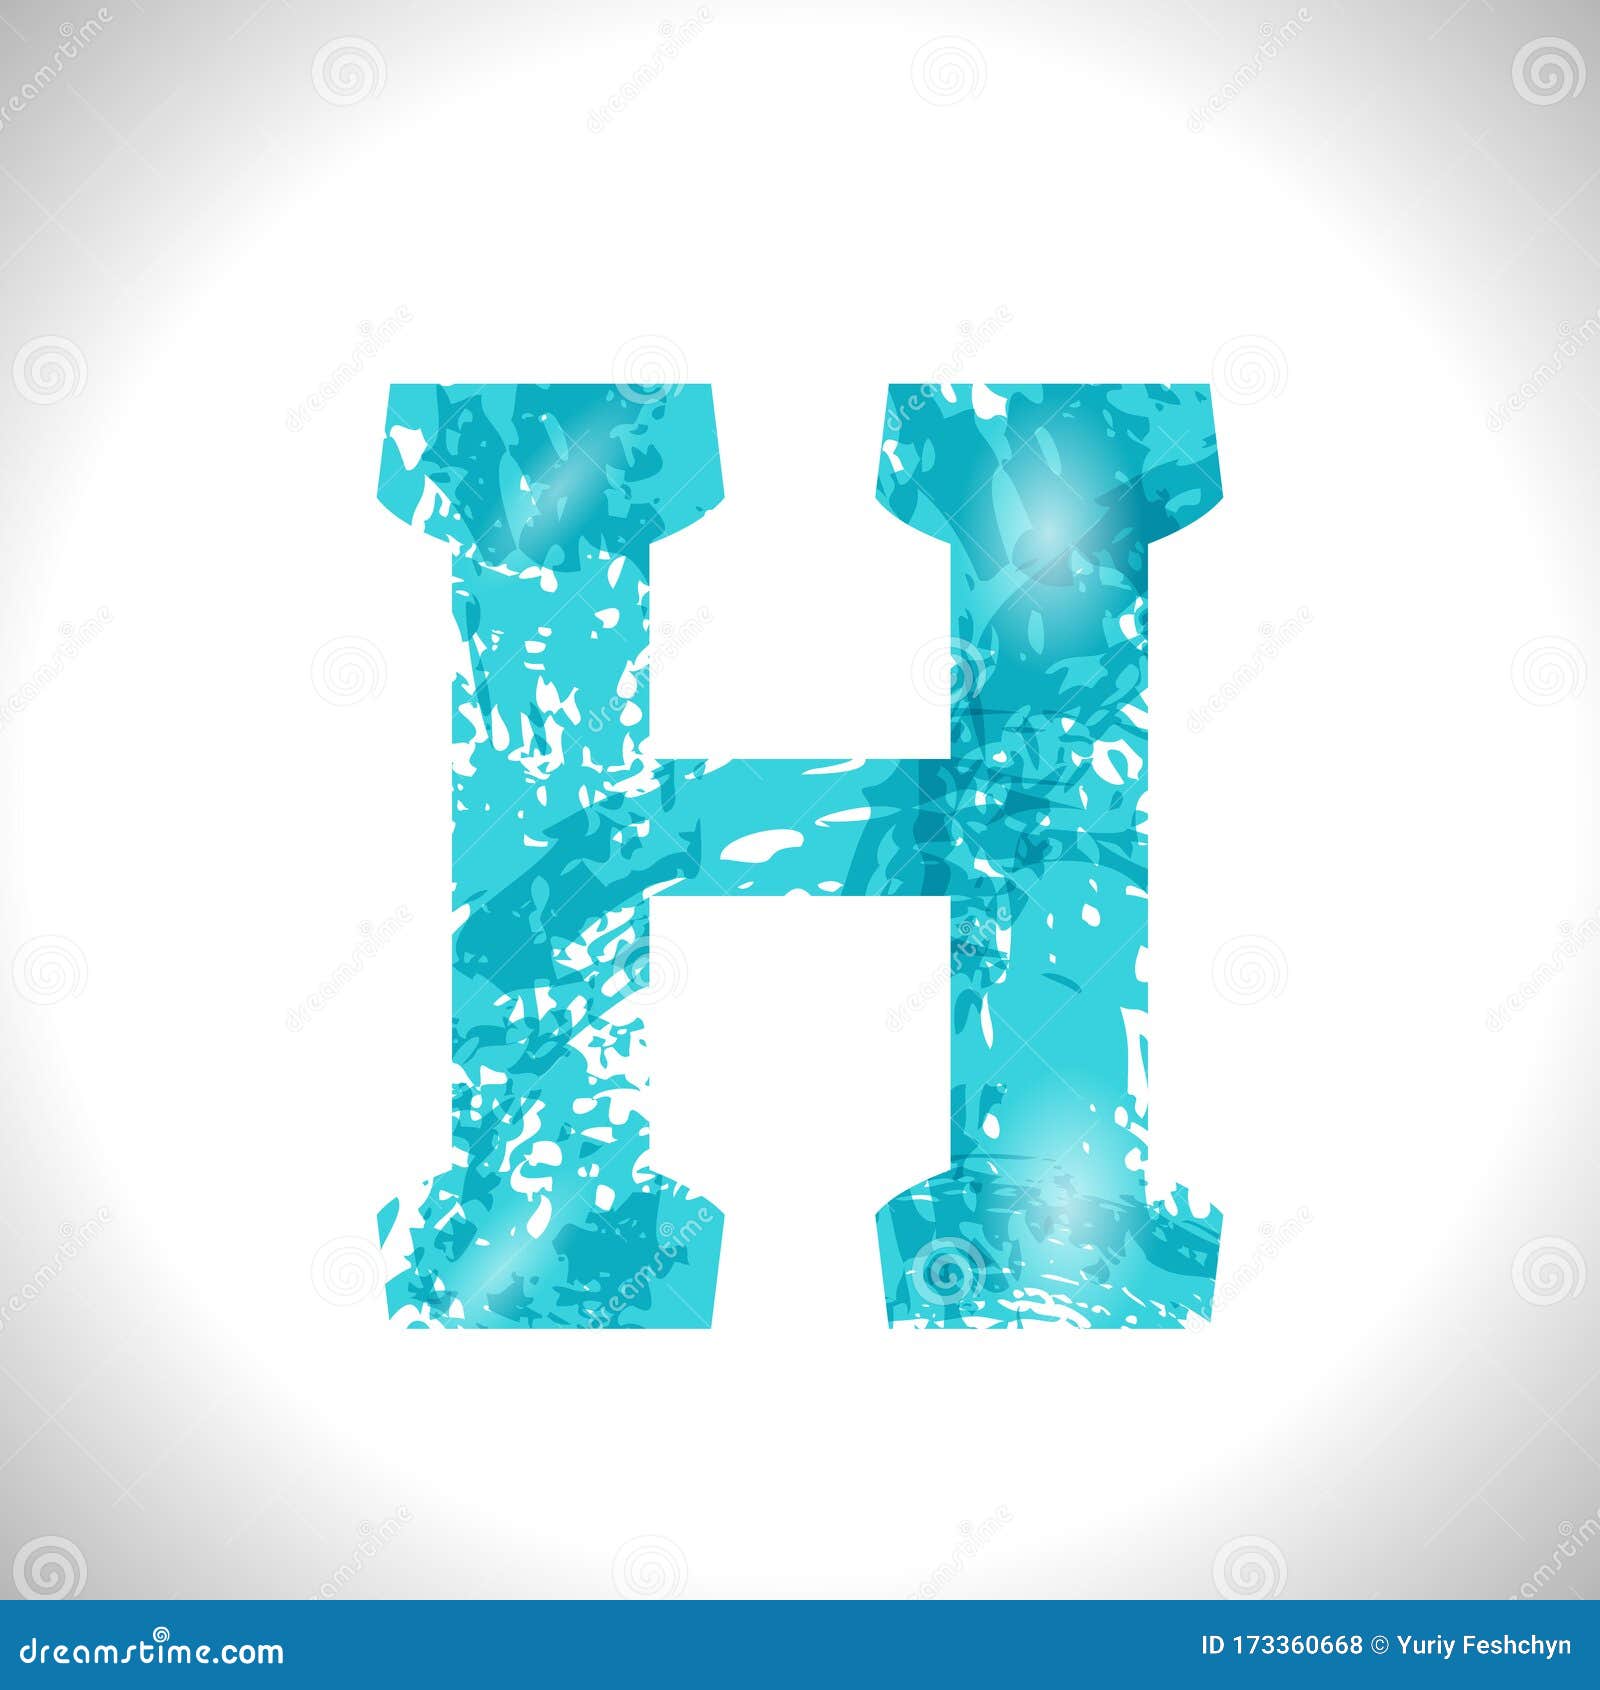 Grunge Symbol H. Font Blue Brush Sketch Style Stock Illustration ...